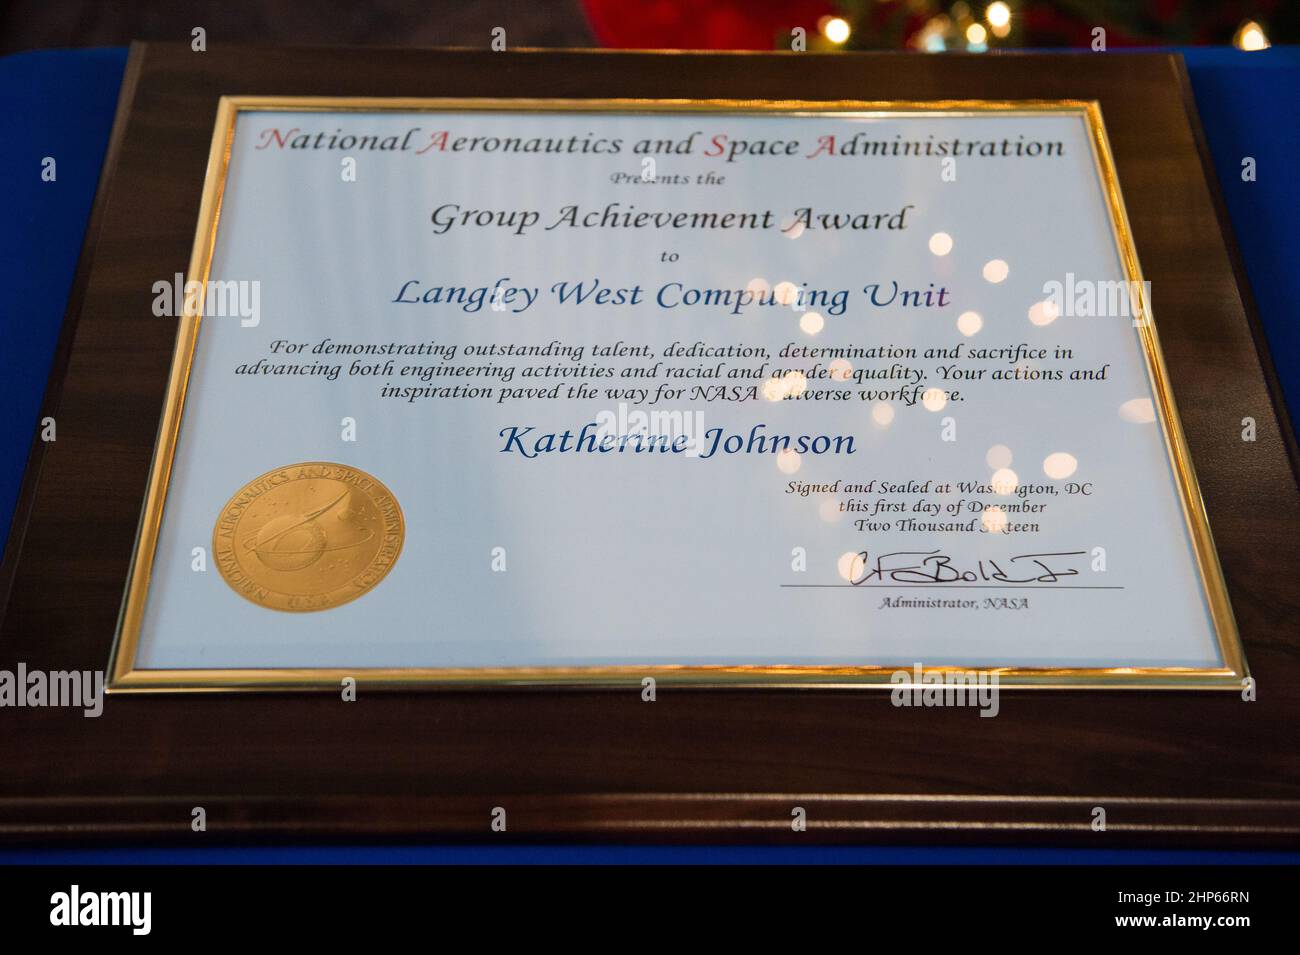 Die Auszeichnung von NASA „Human Computer“ Katherine Johnson wird vor einem Empfang gesehen, bei dem Mitglieder der West Area Computers Division des Langley Research Center am Donnerstag, den 1. Dezember 2016, im Virginia Air and Space Center in Hampton, VA, geehrt werden. Stockfoto